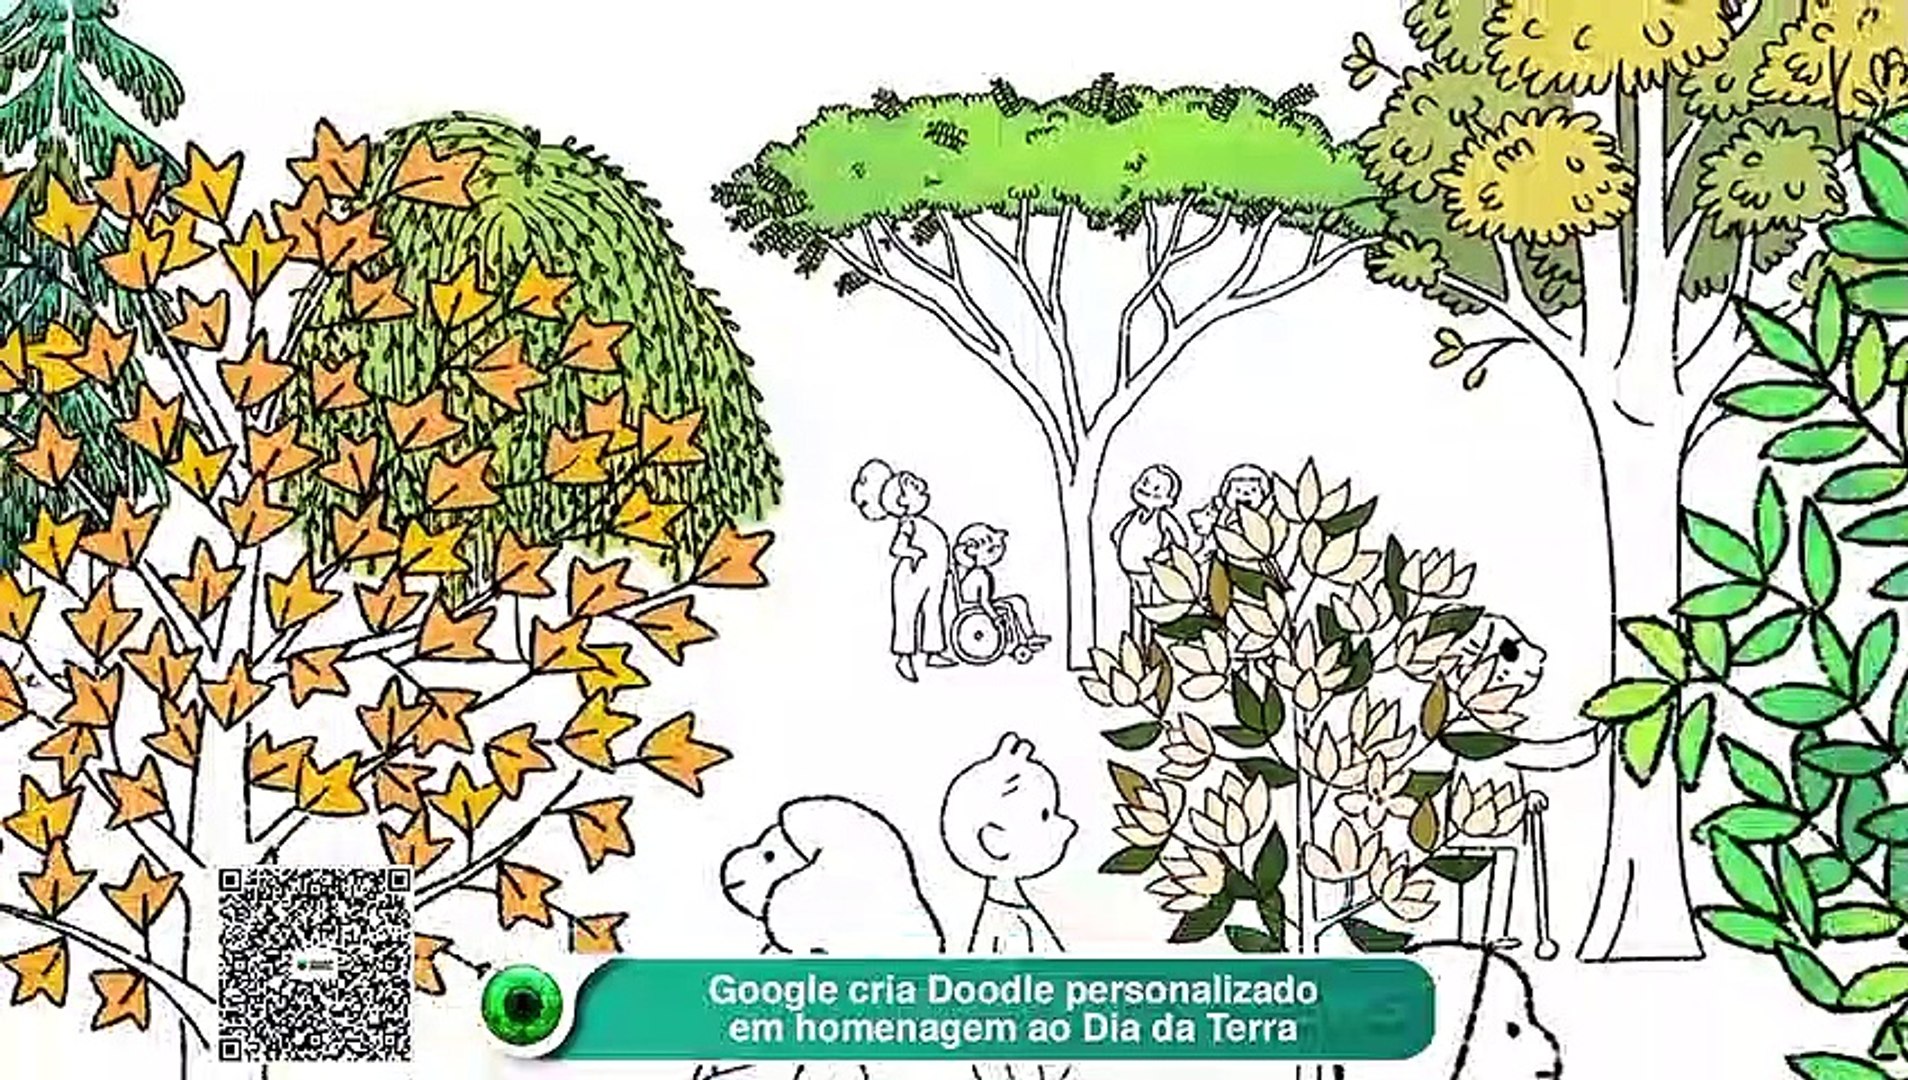 Conheça o Doodle olímpico do Google, game retrô com vários